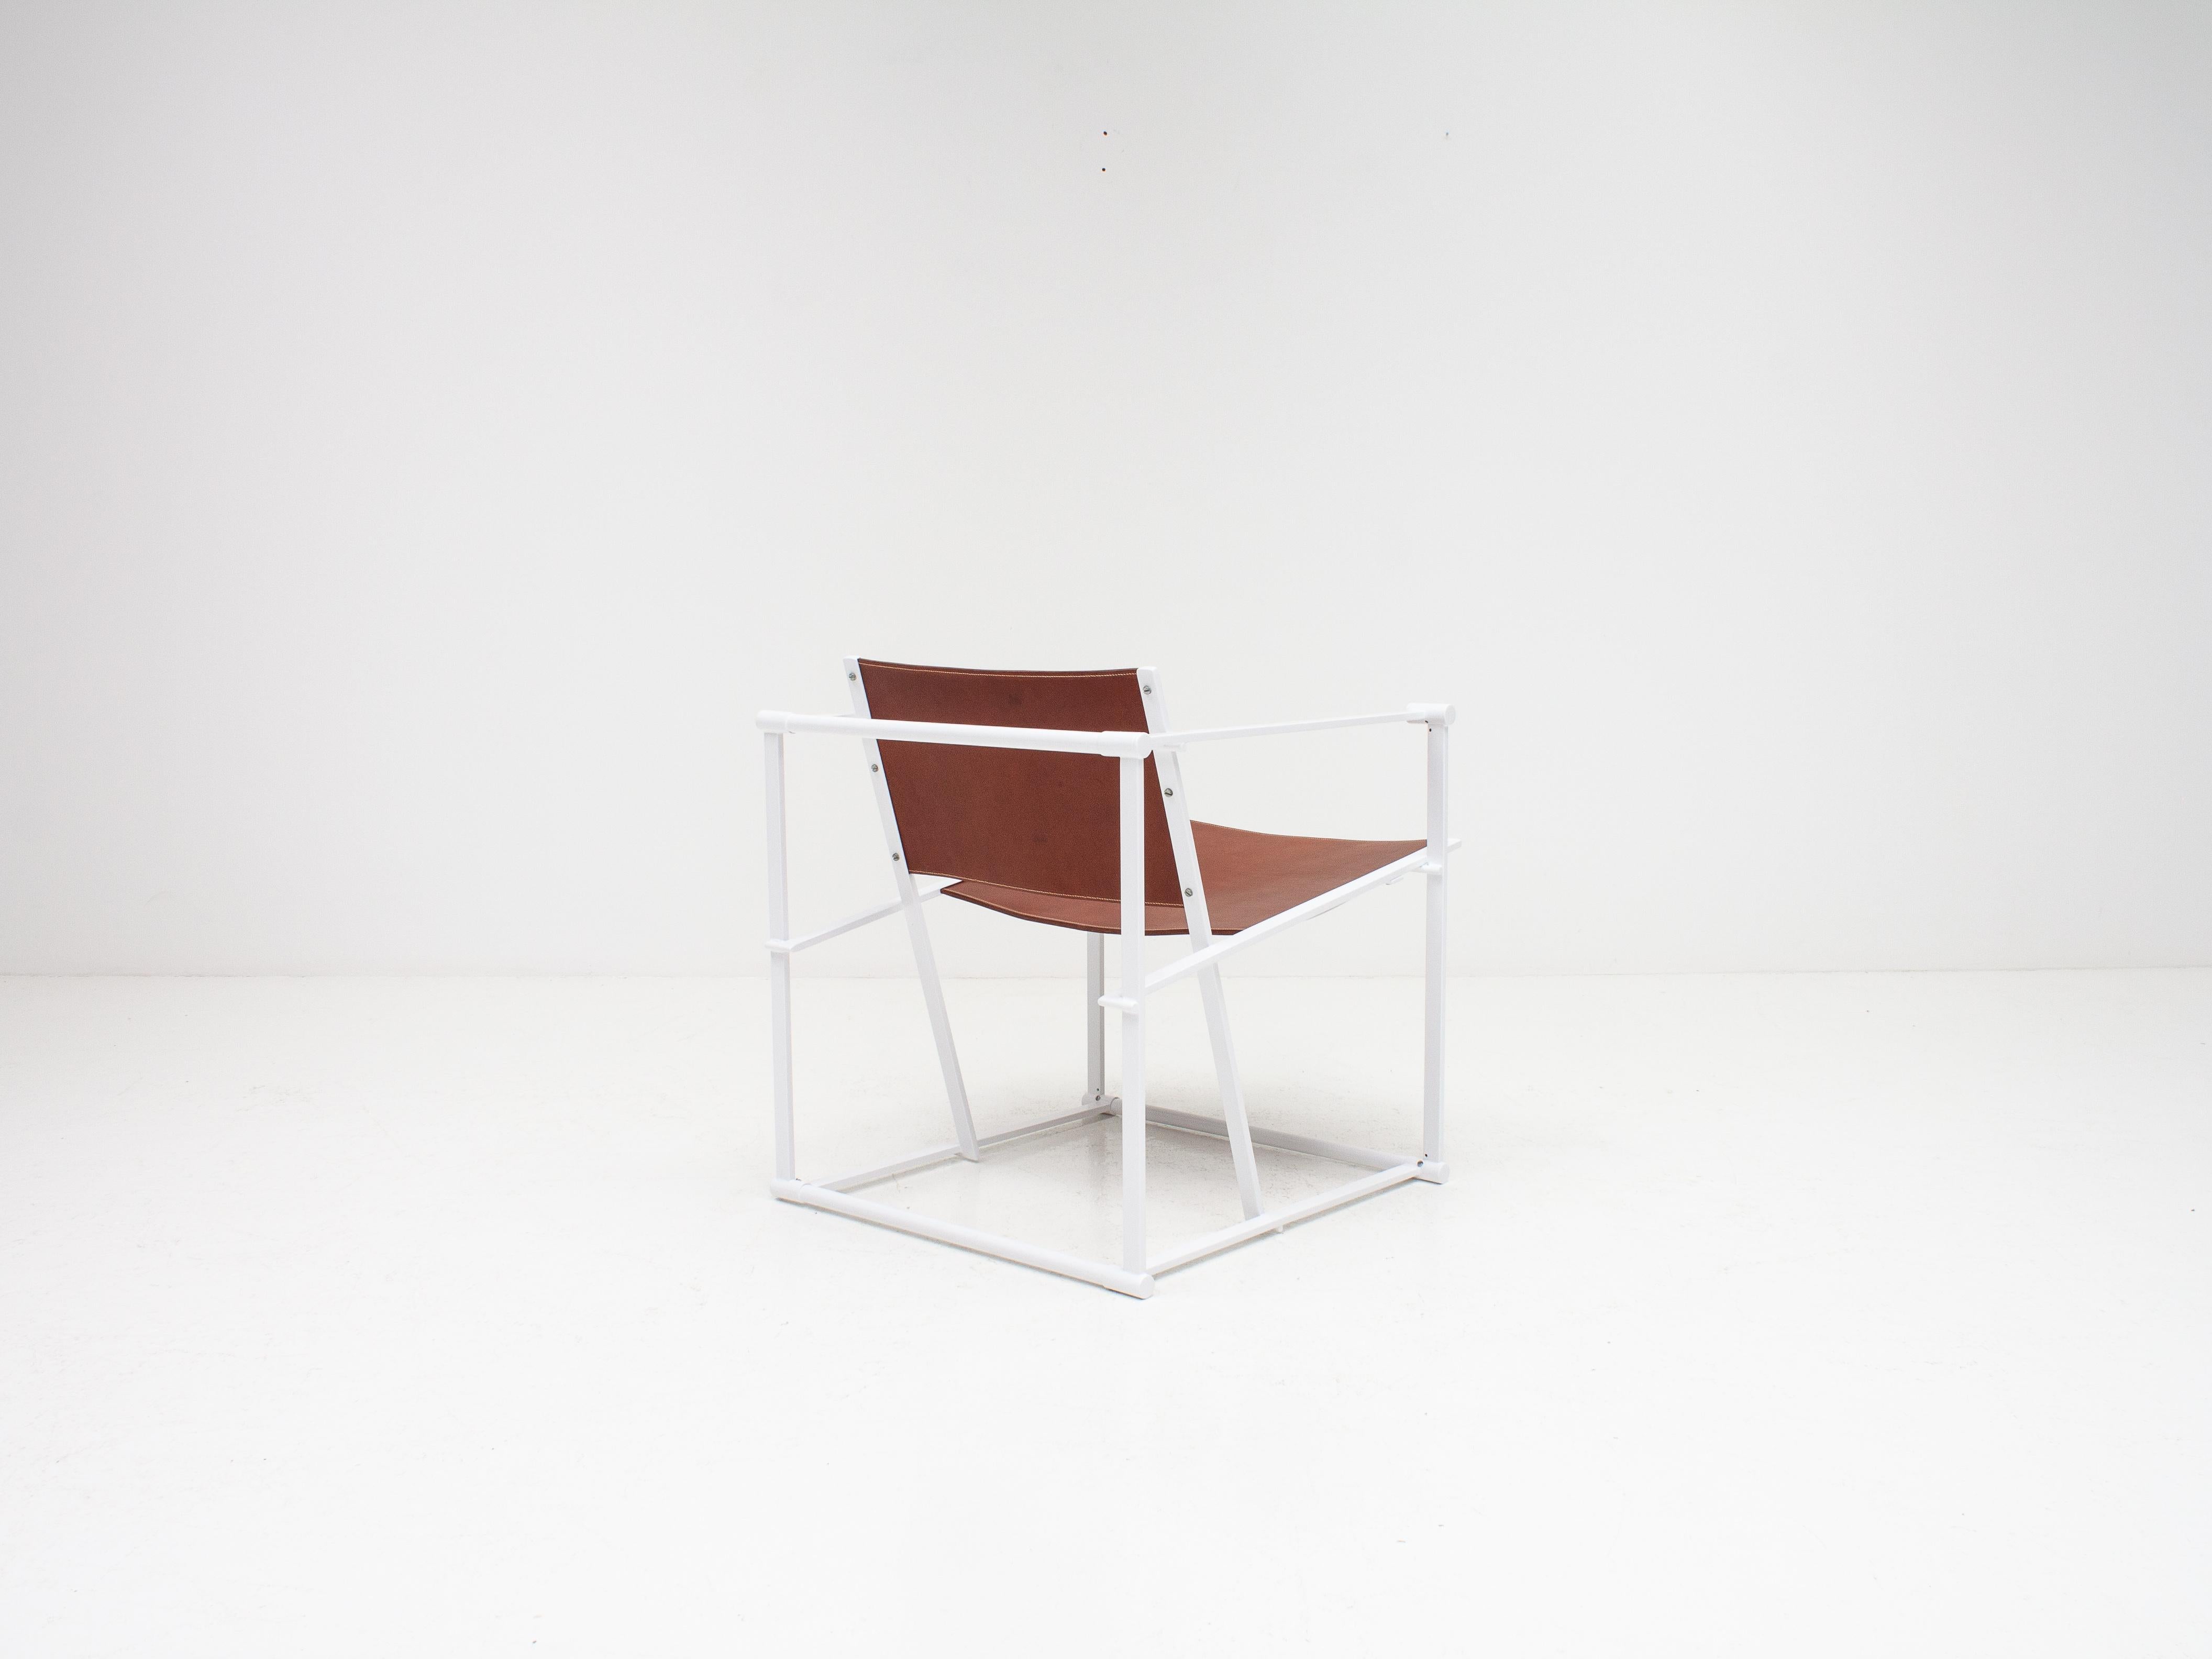 Radboud Van Beekum FM62 Steel & Leather Chair for Pastoe, 1980s 2